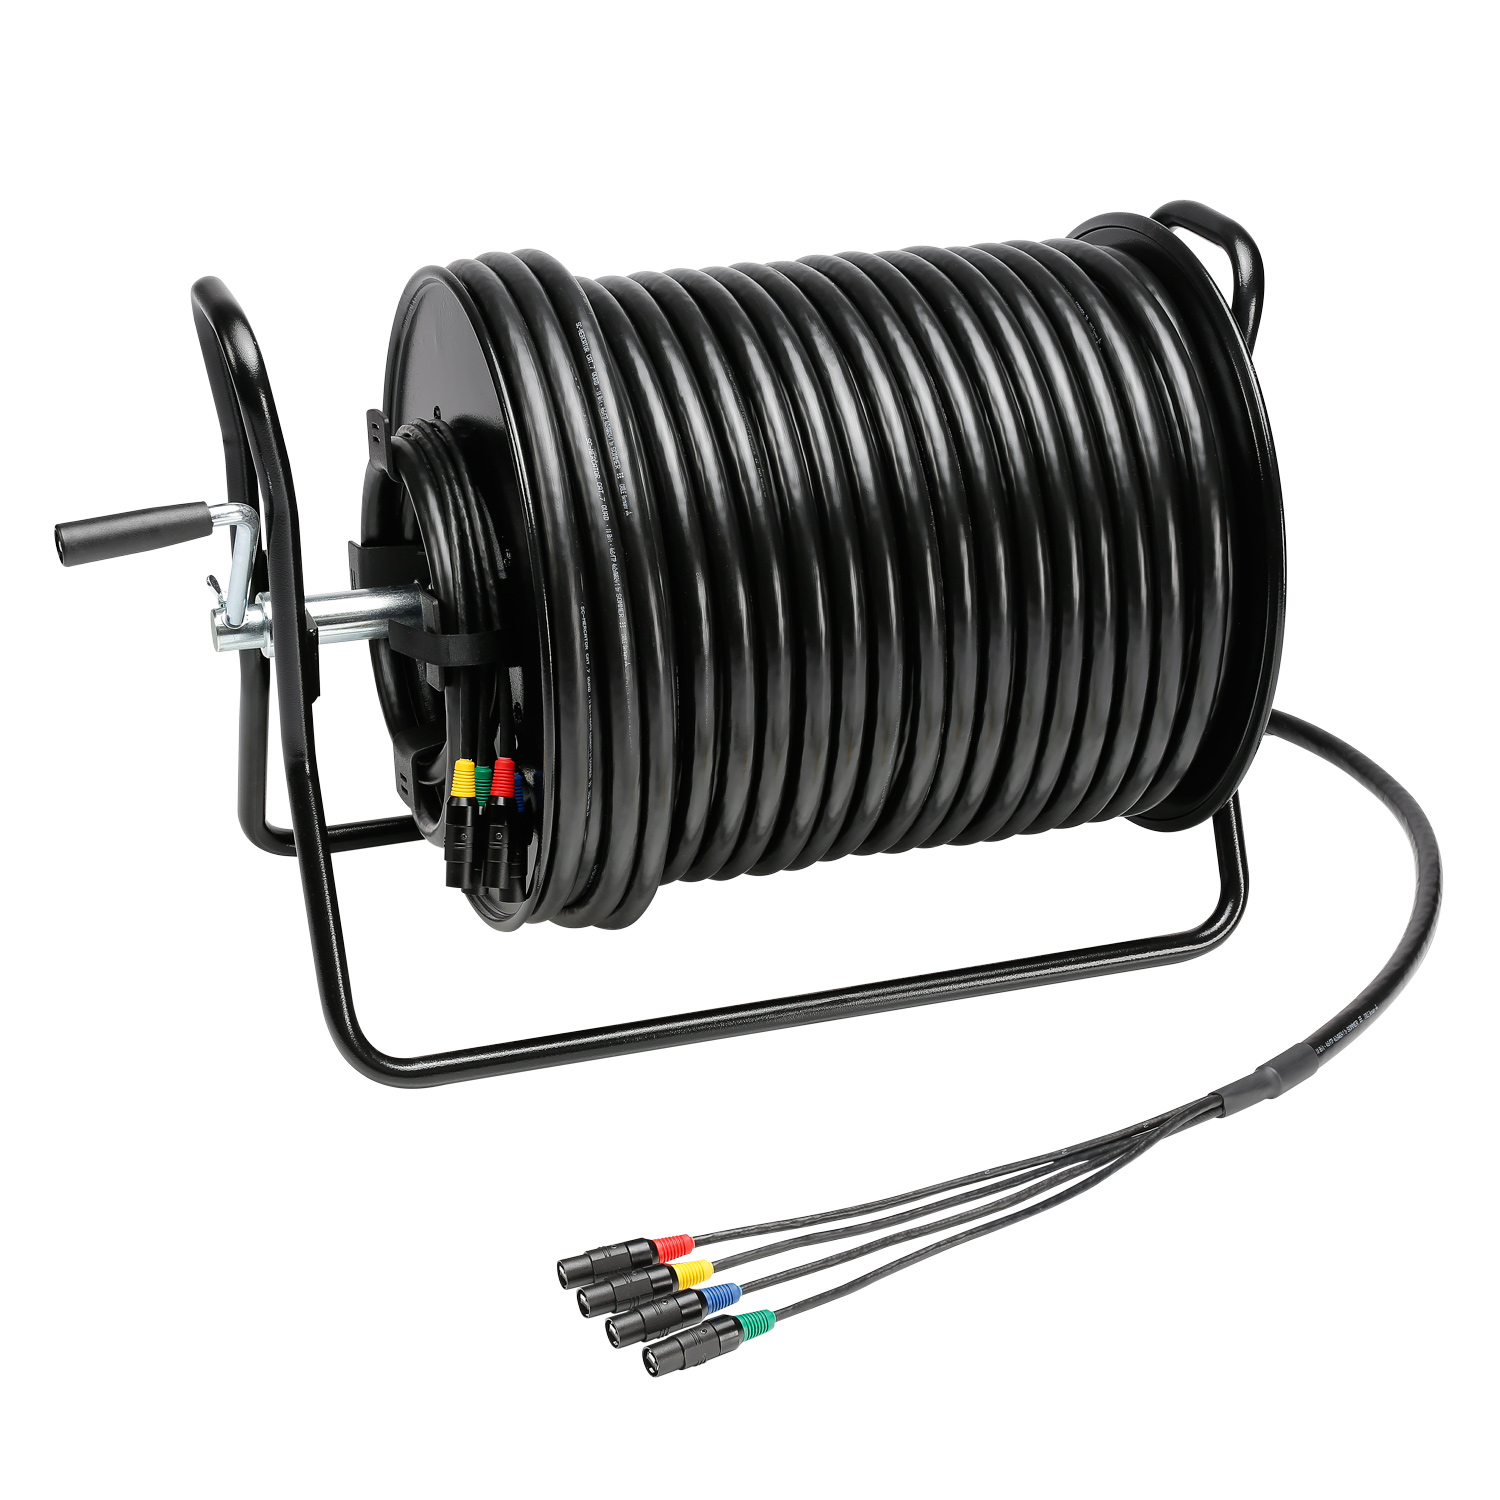 Network cable SC-Mercator CAT.7, 8 x 0,22 mm² | RJ45 / RJ45, HIROSE on cable spool